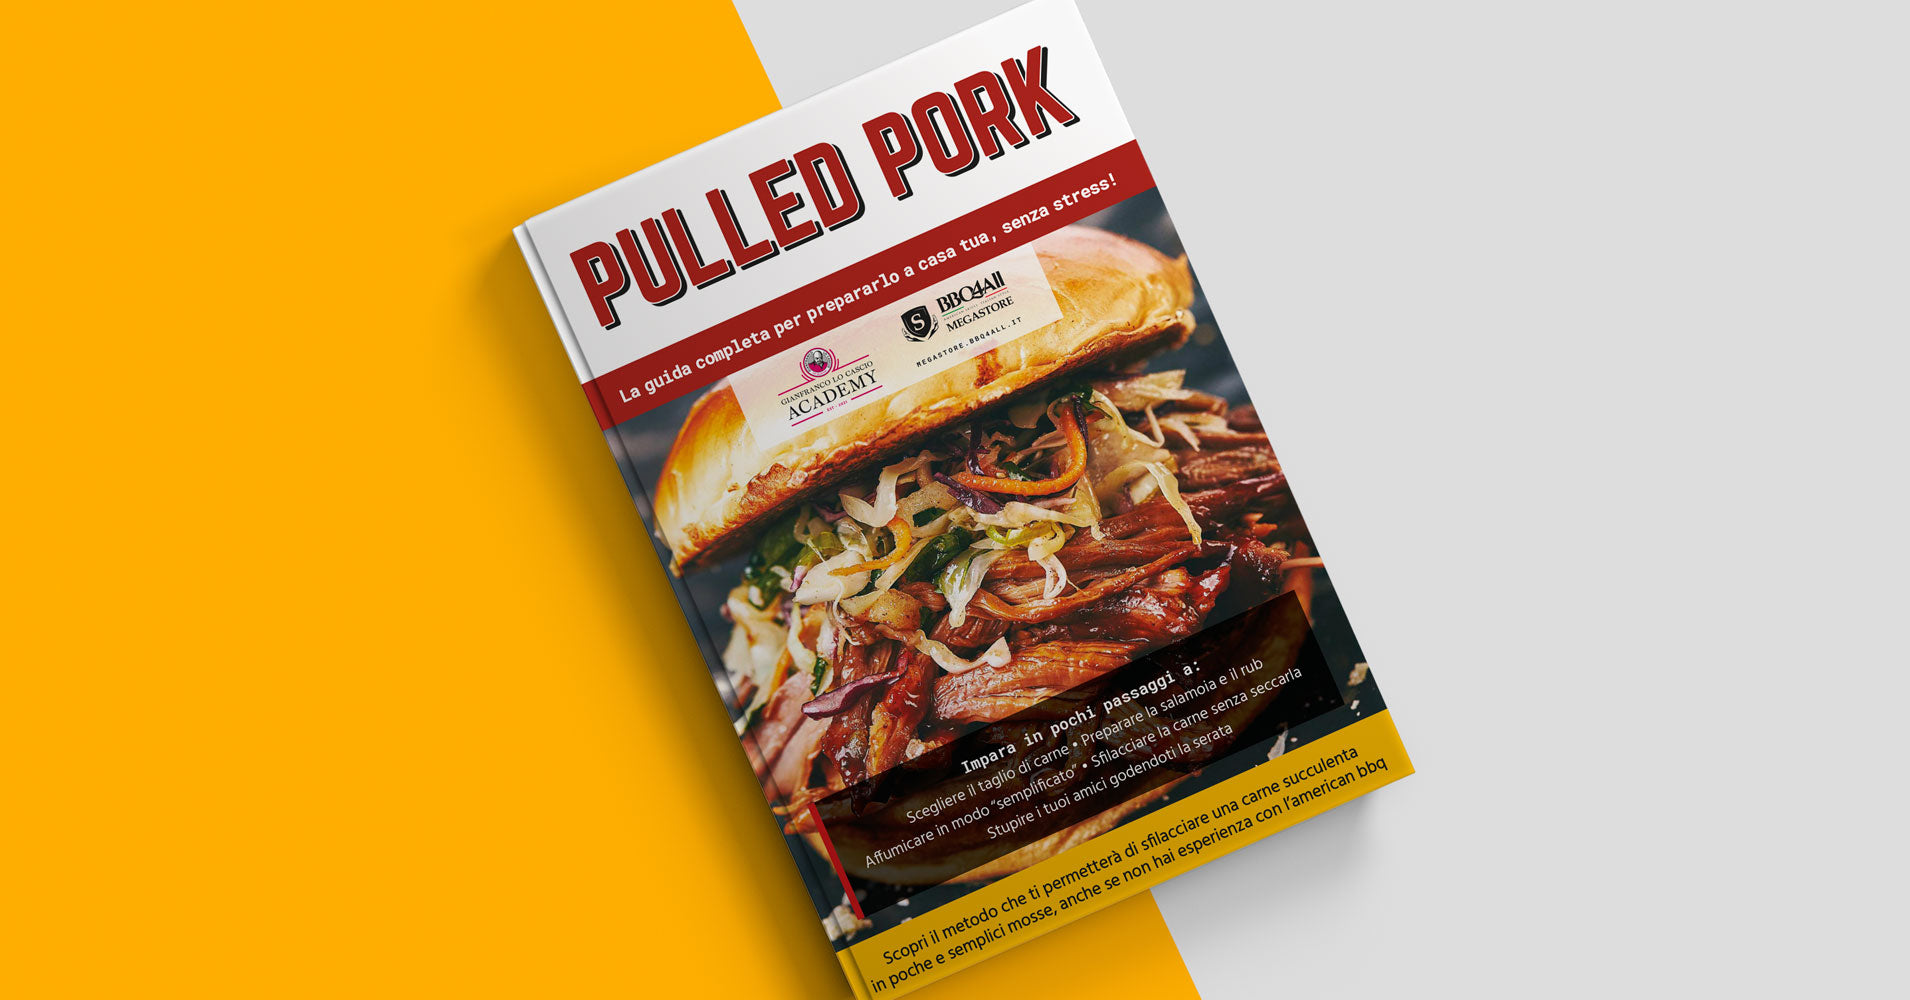 Guida BBQ4All - Come si fa il Pulled pork